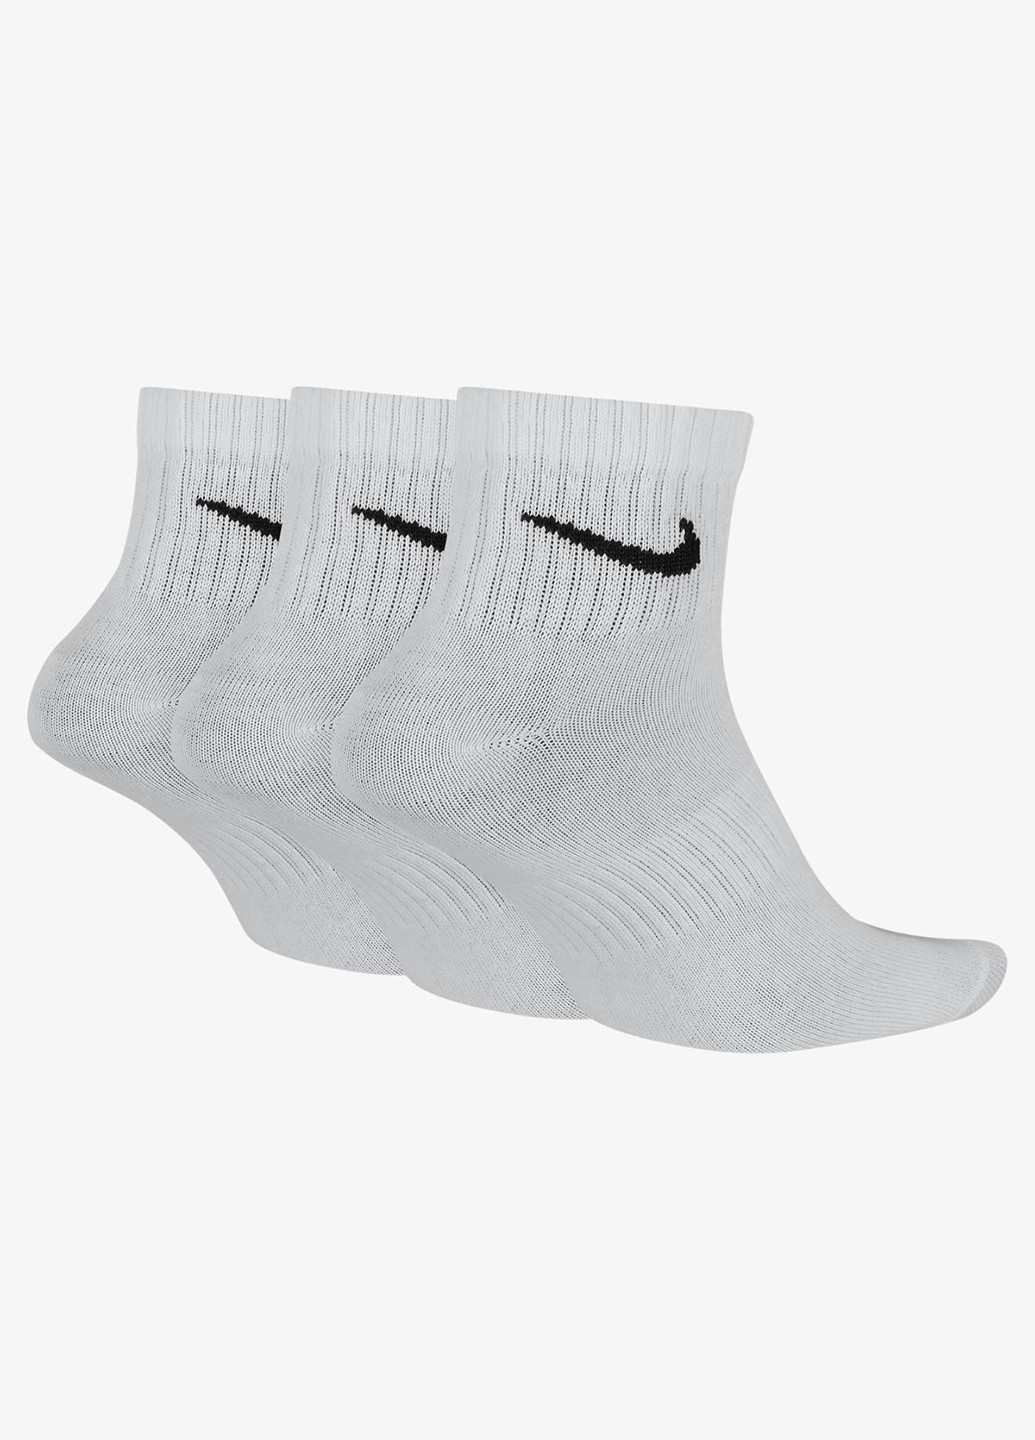 Носки (3 пары) Nike логотипы белые спортивные